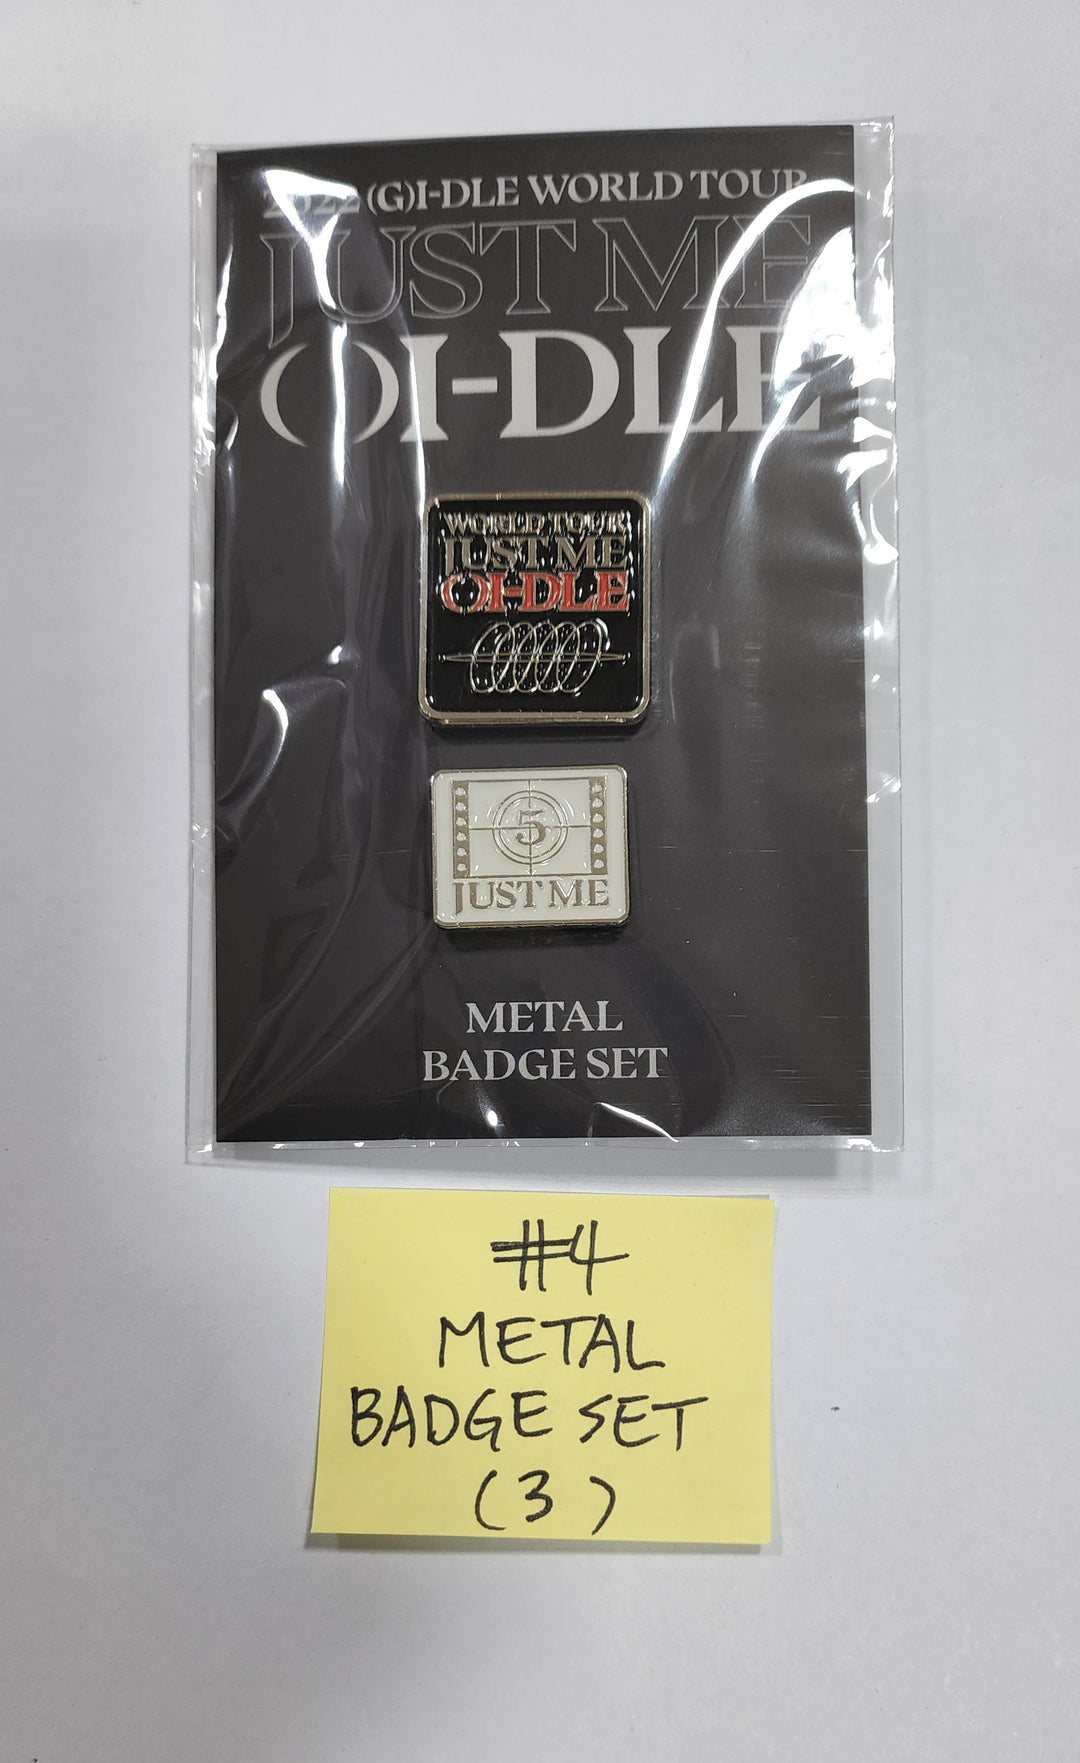 (g) I-DLE "I NEVER DIE" - Soundwave Official MD [Metal Badge Set, Poster Set, Photocard Set, Special Ticket Set]